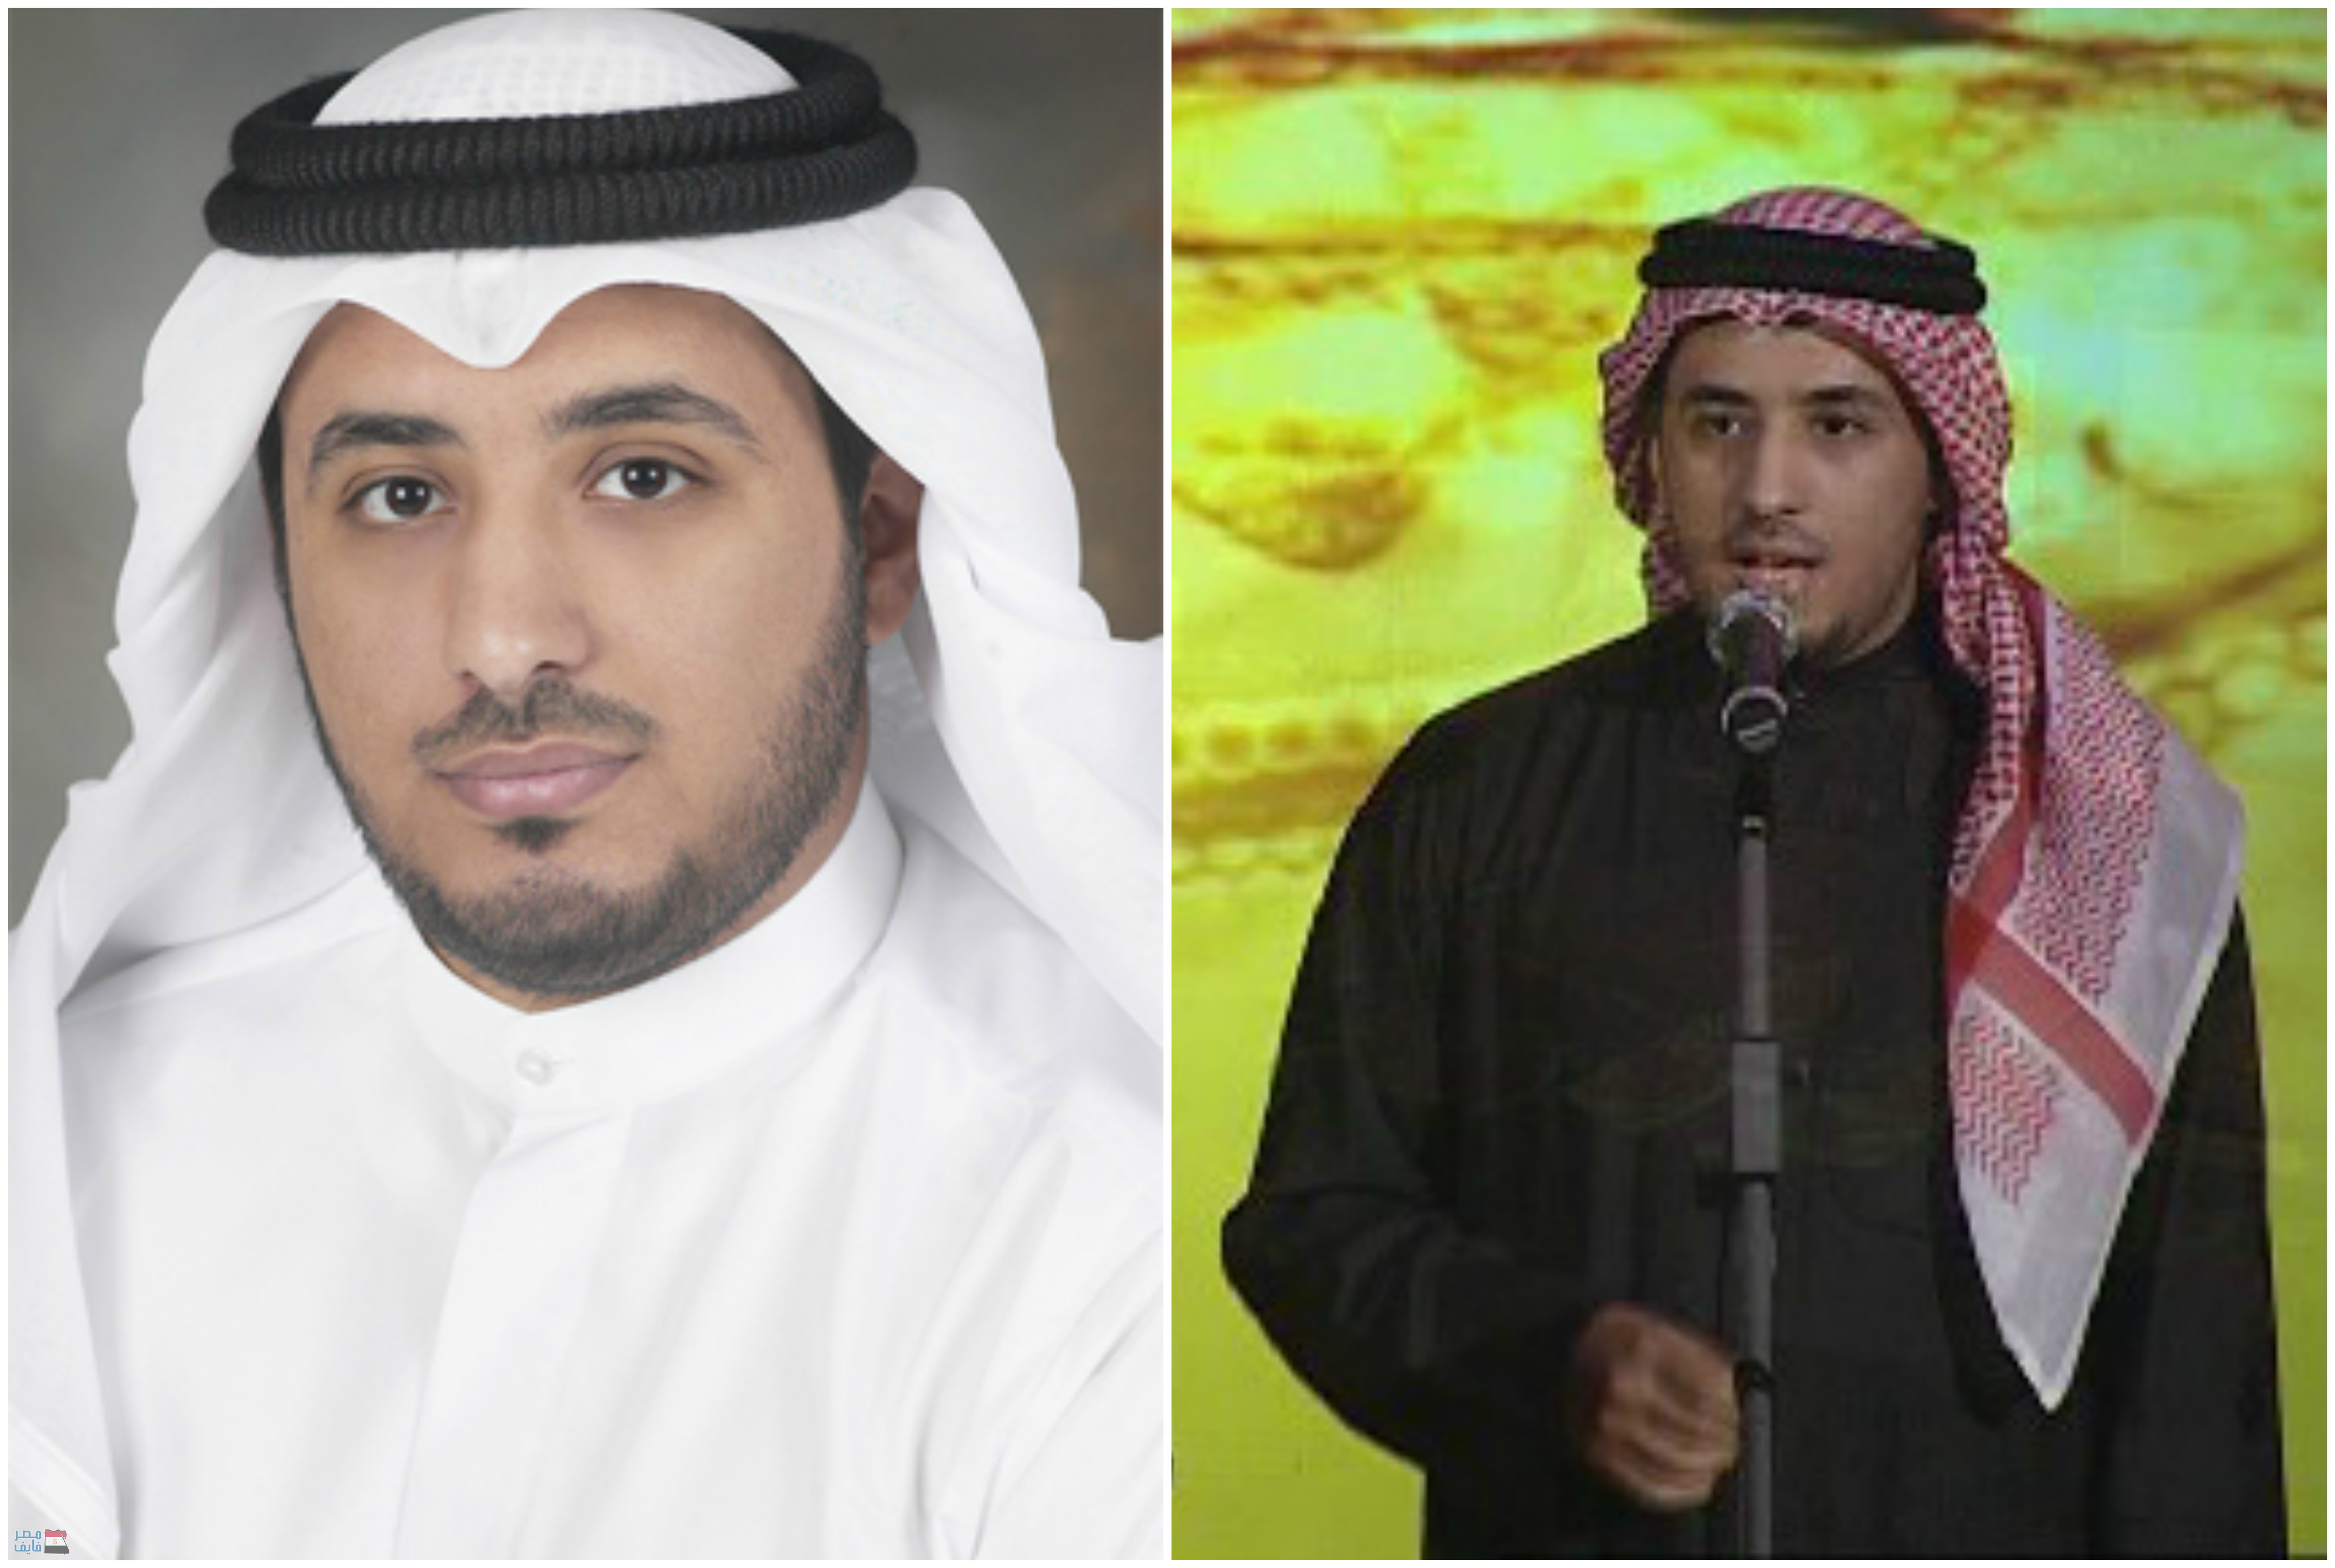 وفاة المنشد الكويتي الشاب «مشاري العرادة» صاحب أنشودة “فرشي التراب” بحادث مروري بالسعودية